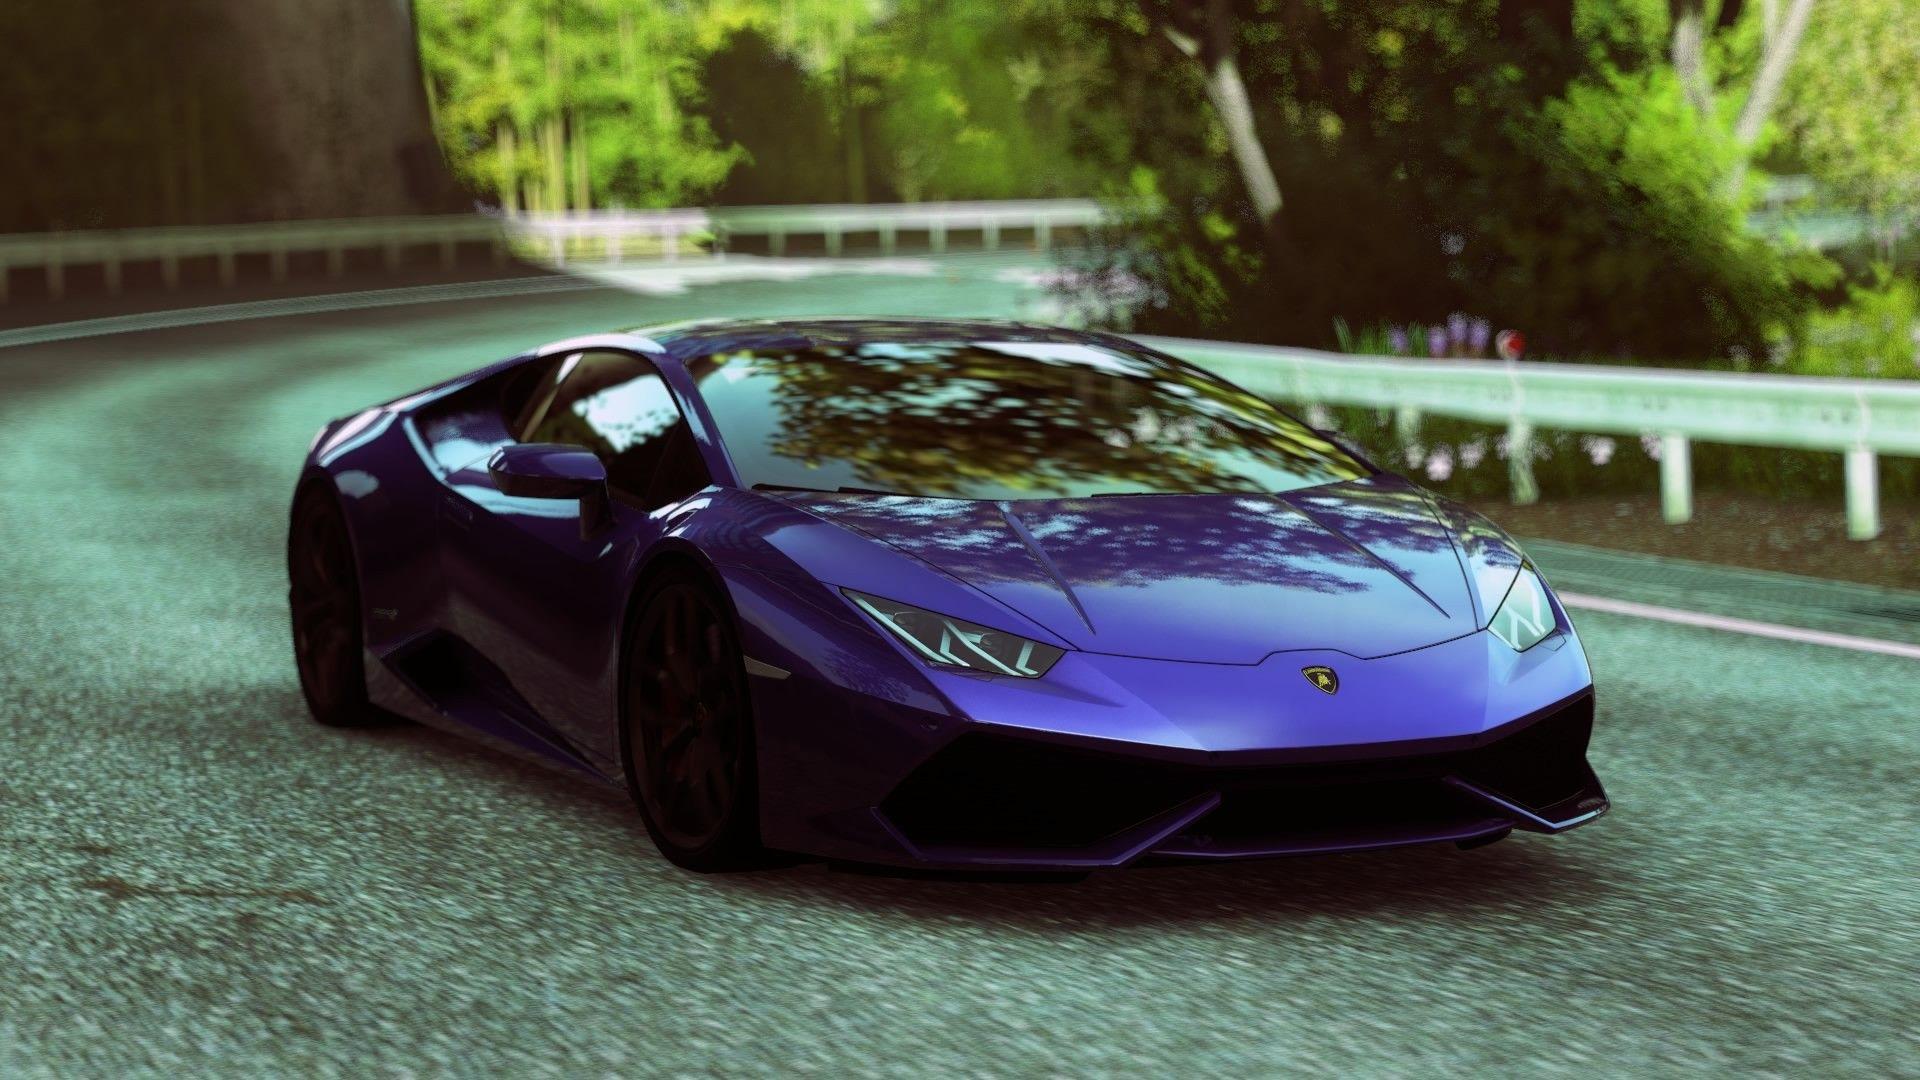 Lamborghini Wallpaper Image Photo Picture Background